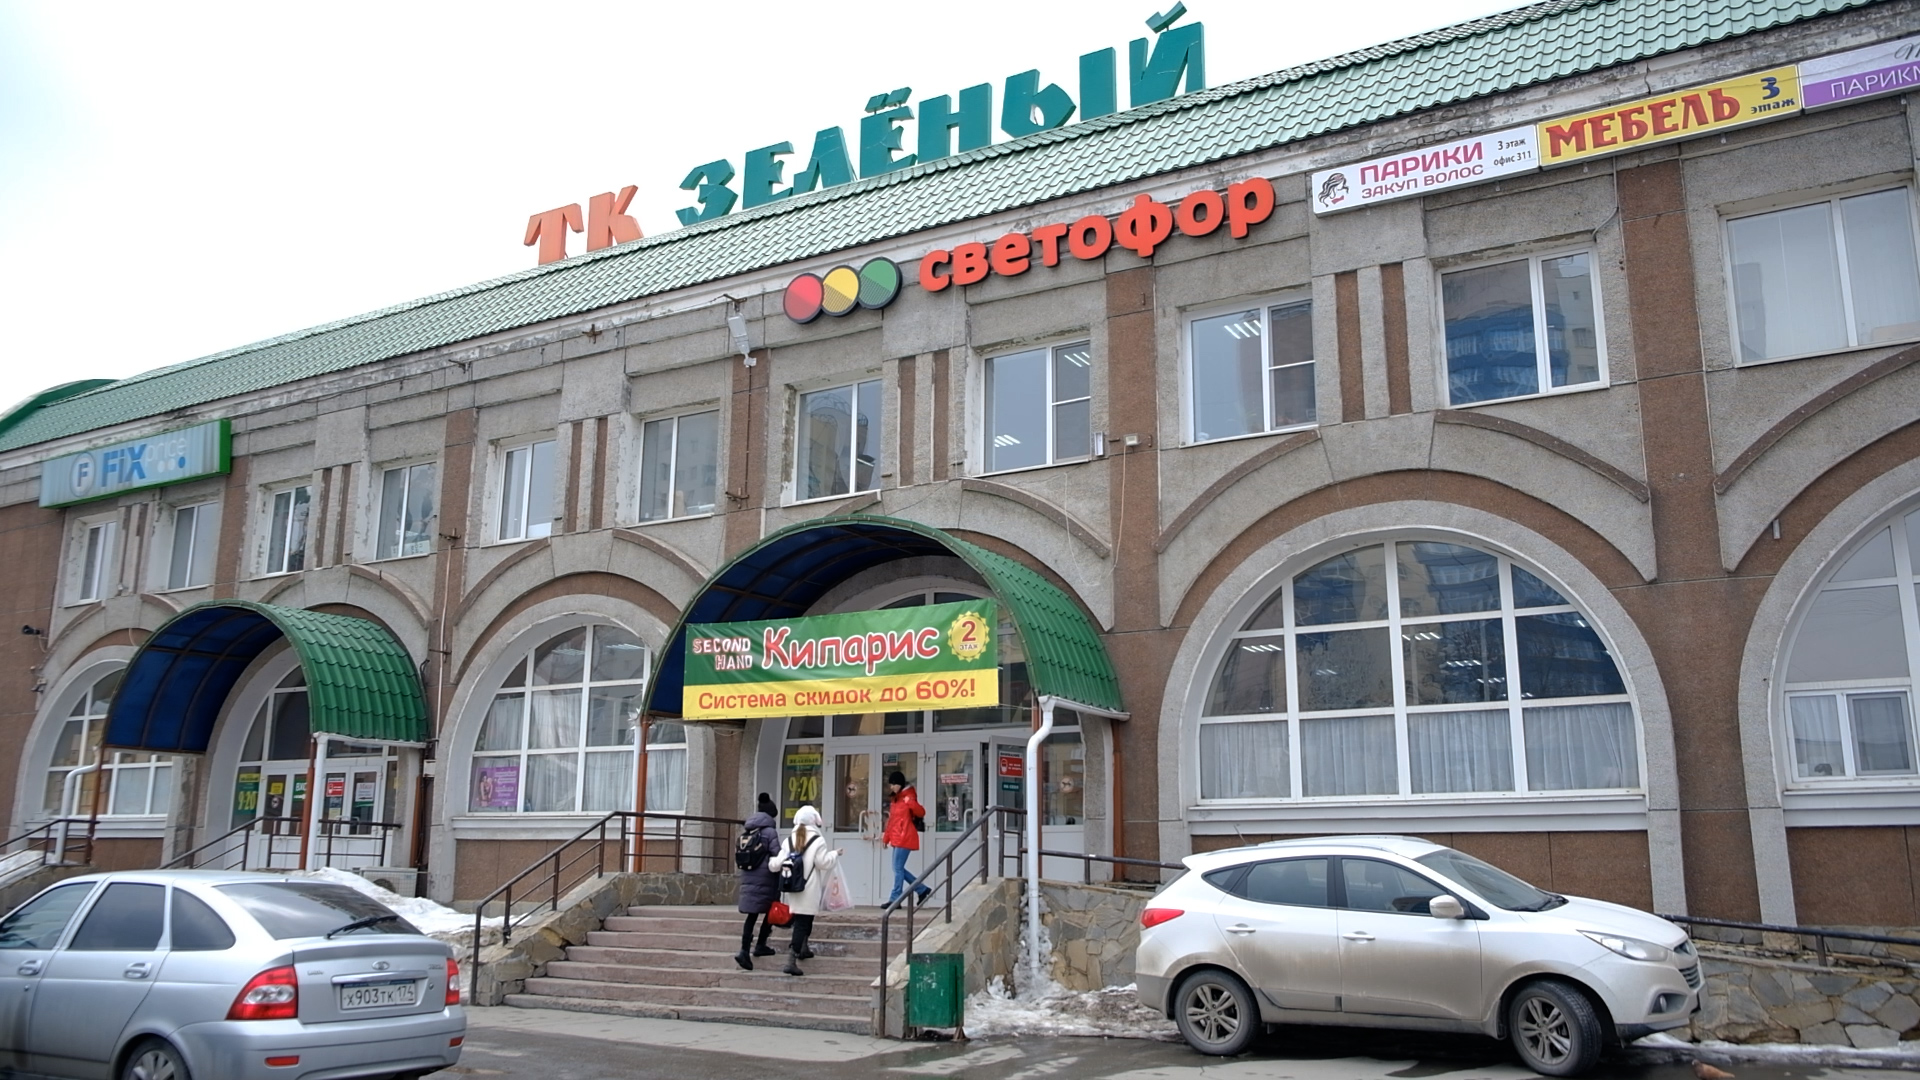 Такие магазины появились в Челябинске относительно недавно — <a href="https://74.ru/text/economics/2021/07/01/69999689/" class="io-leave-page _" target="_blank">в прошлом году</a>